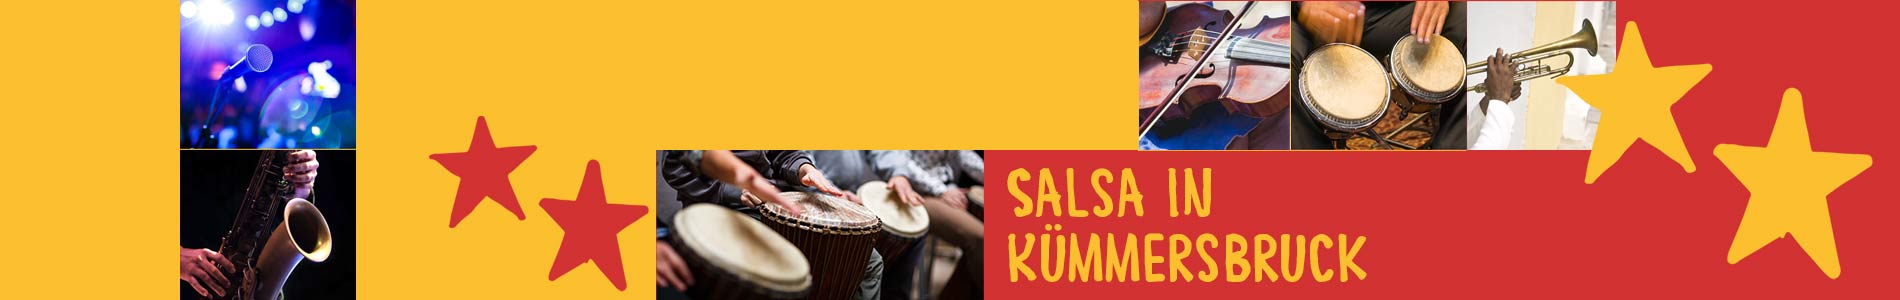 Salsa in Kümmersbruck – Salsa lernen und tanzen, Tanzkurse, Partys, Veranstaltungen